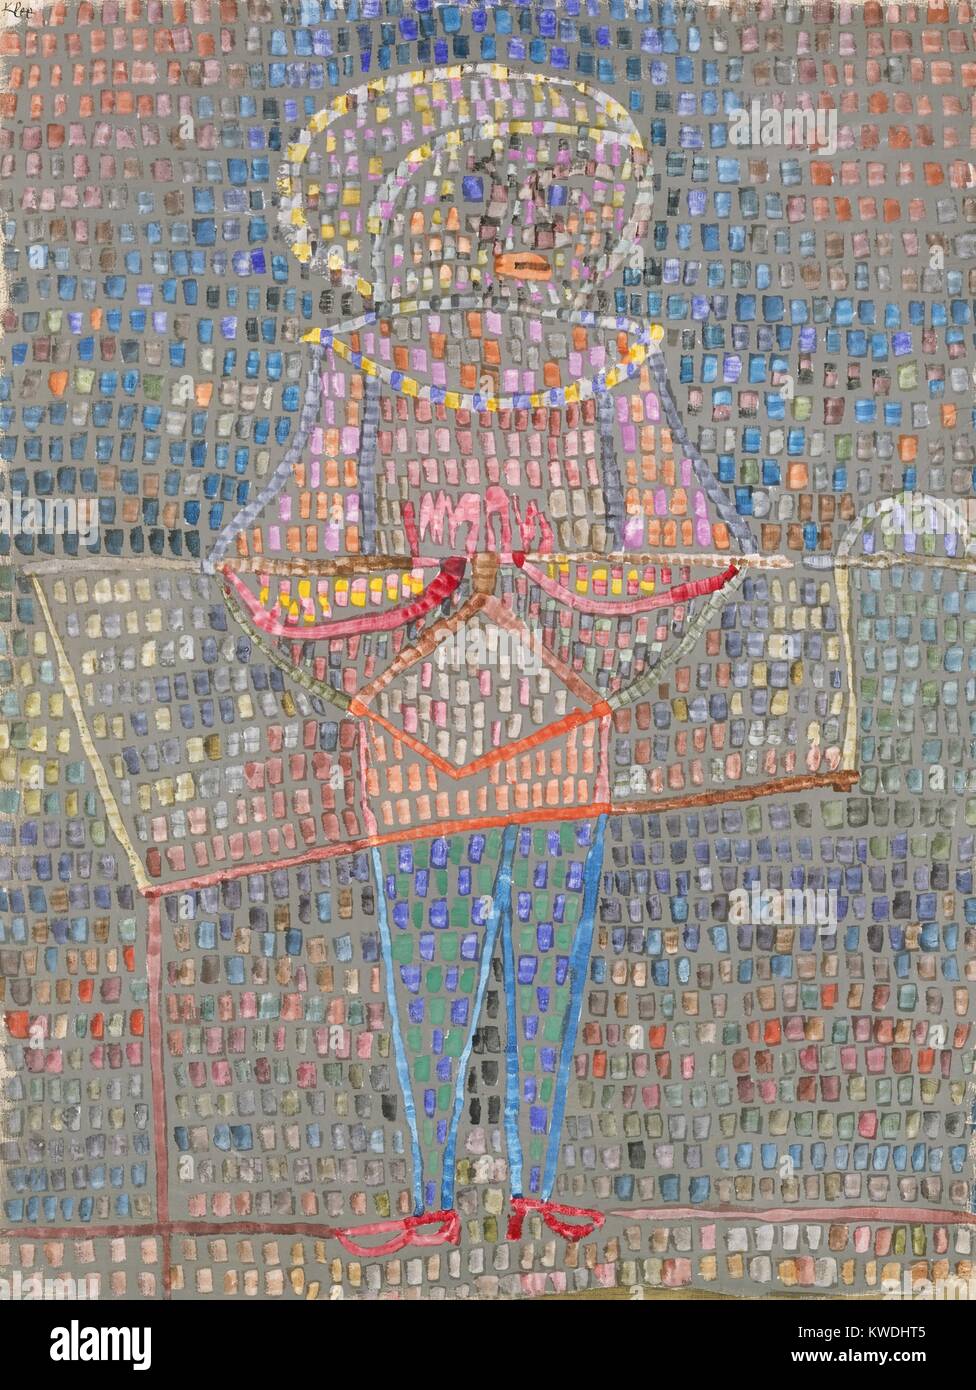 Junge in Fancy Dress, von Paul Klee, 1931, Schweizer Zeichnung, Aquarell, Gouache und Graphit auf Papier. Grundzüge und rechteckigen Patches aus weißer Farbe auf grauem Papier Zeilen definieren und abstrahierte menschliche Figur mit markant geformten Kleidungsstücke. Diese sind Überlackieren mit transparenten Wasser Farbe für ein Mosaik Wirkung. Die Abbildung ist verdunkelt durch diese Behandlung, wie ein Junge von Fancy Kleidung sein könnten (BSLOC 2017 7 22) Stockfoto